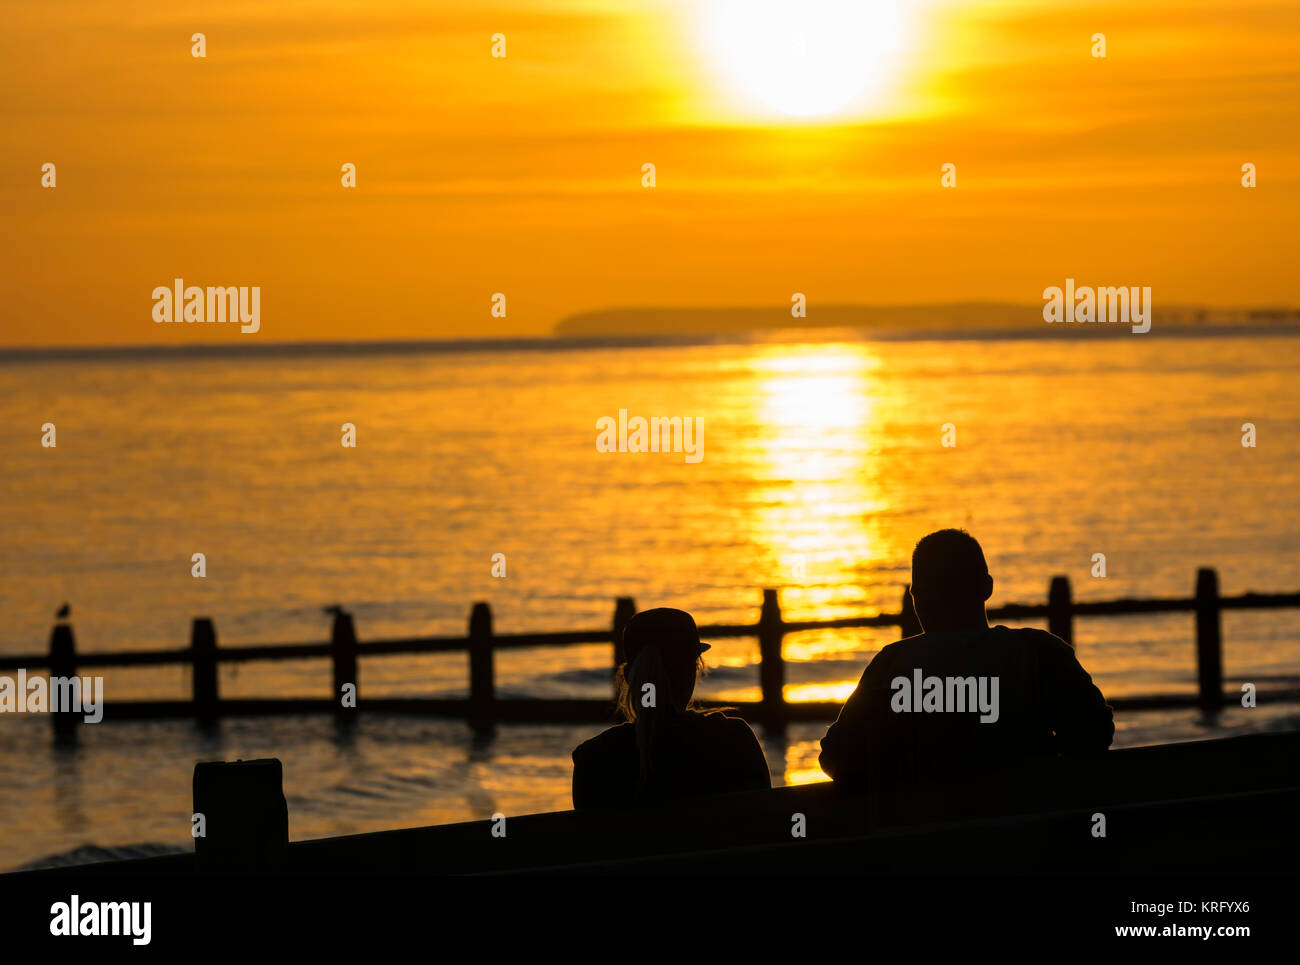 Giovane seduto su una spiaggia a guardare il tramonto sul mare, nel Regno Unito. Foto Stock